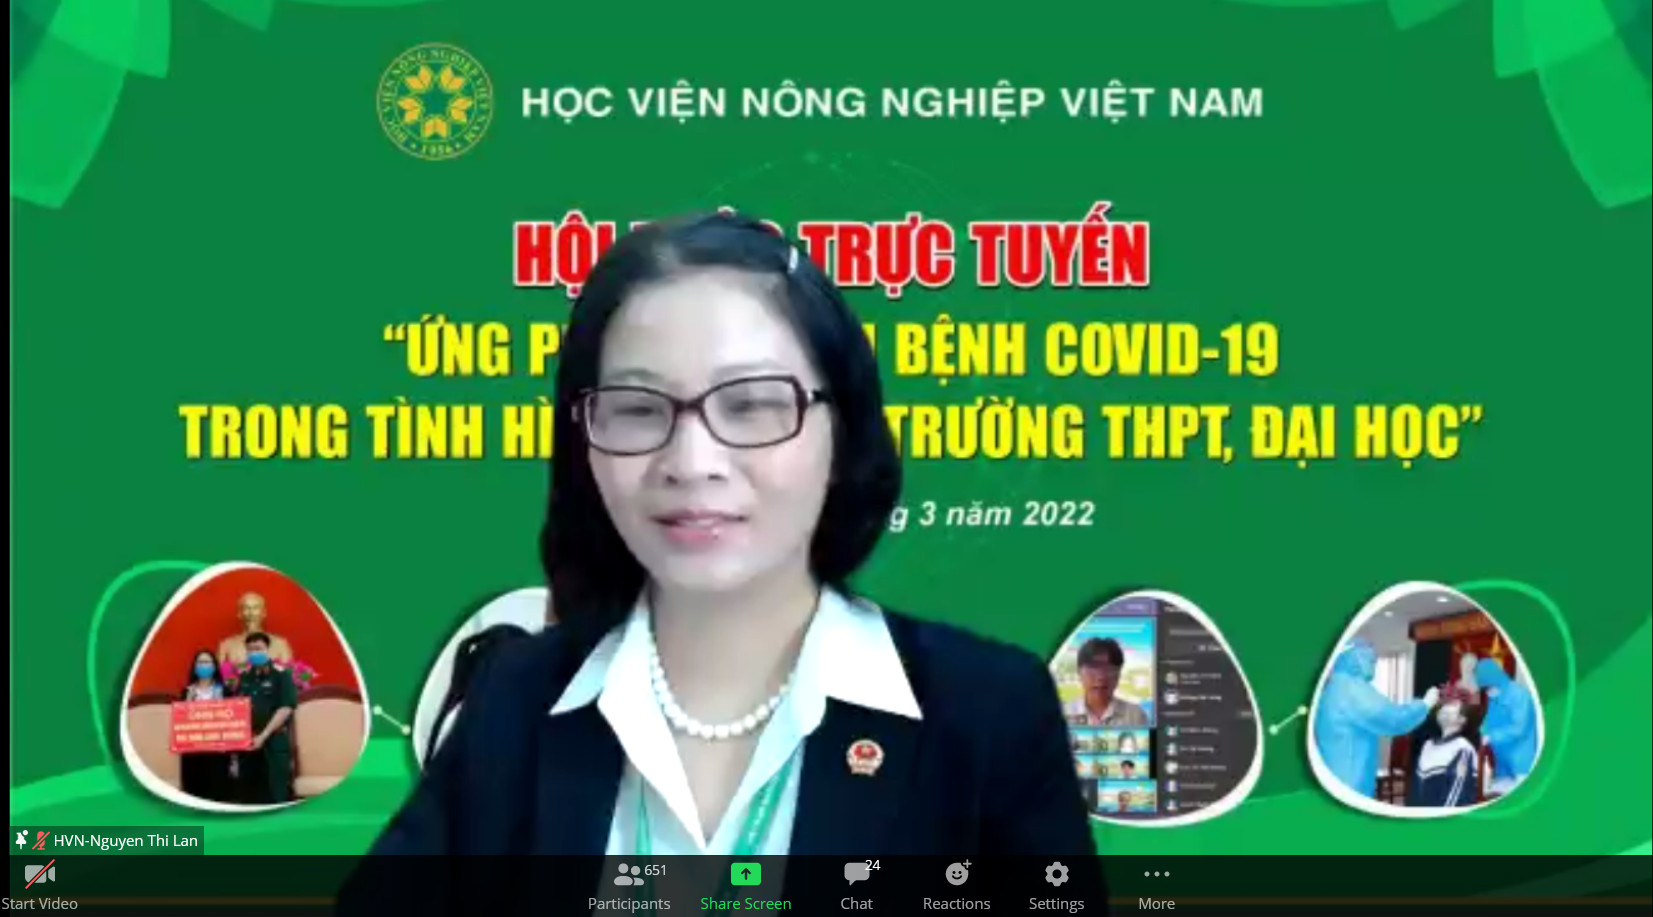 Học viện Nông nghiệp Việt Nam cùng các trường phổ thông bàn cách dạy - học an toàn trong dịch Covid-19 - Ảnh 1.